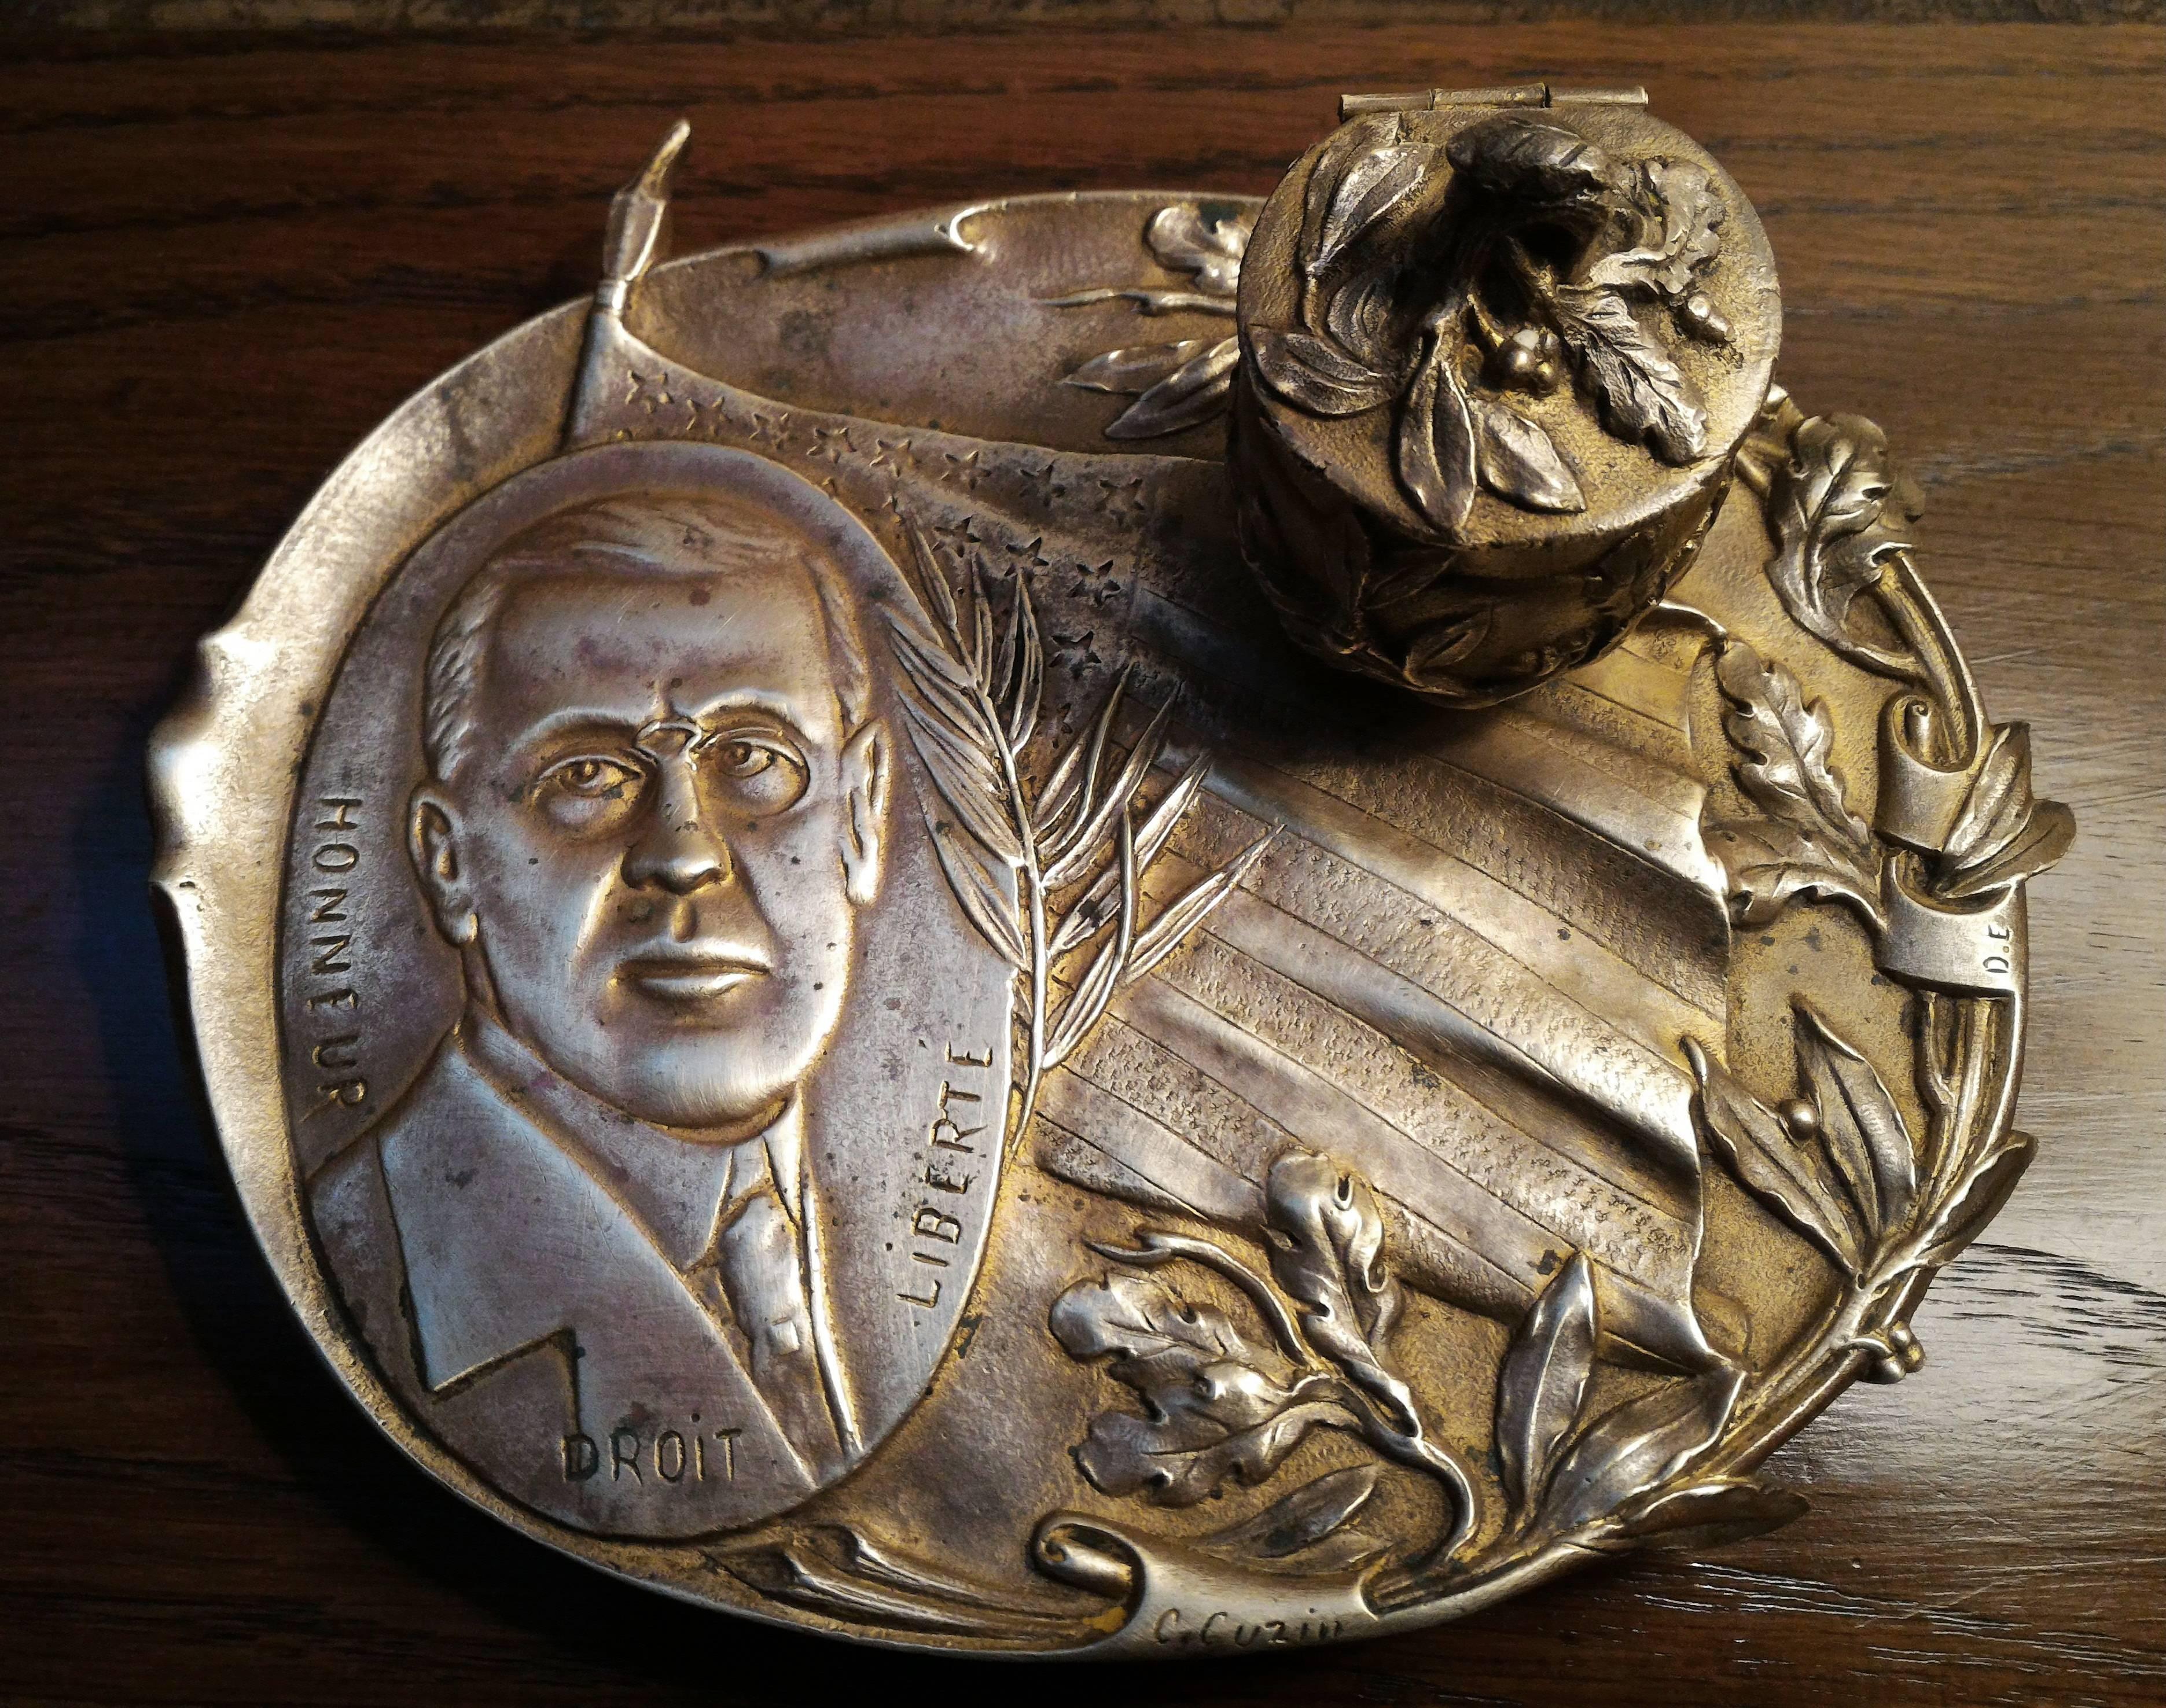 Selten, einmalig.

Dieses einzigartige Jugendstil-Tintenfass aus Bronze, signiert von Cuzin, um 1918 

in Vertretung des US-Präsidenten Tommy Wilson (28. Präsident der USA von 1913-1921).

Dieses Tintenfass feiert die Stärke und die